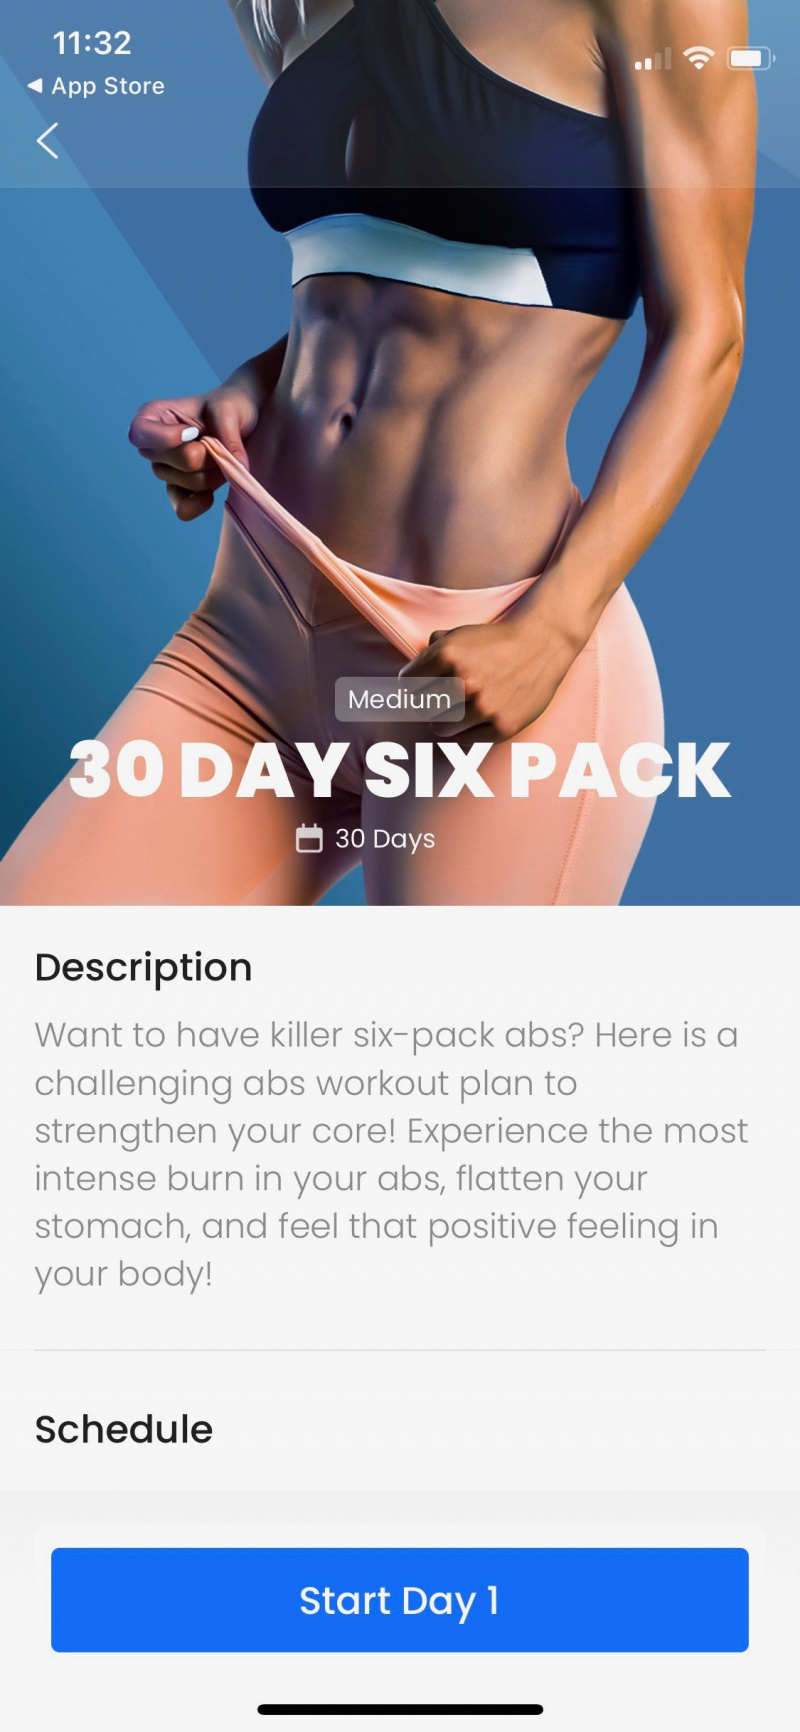   Skærmbillede af 7M app, der viser 30 dages 6-pack introduktion